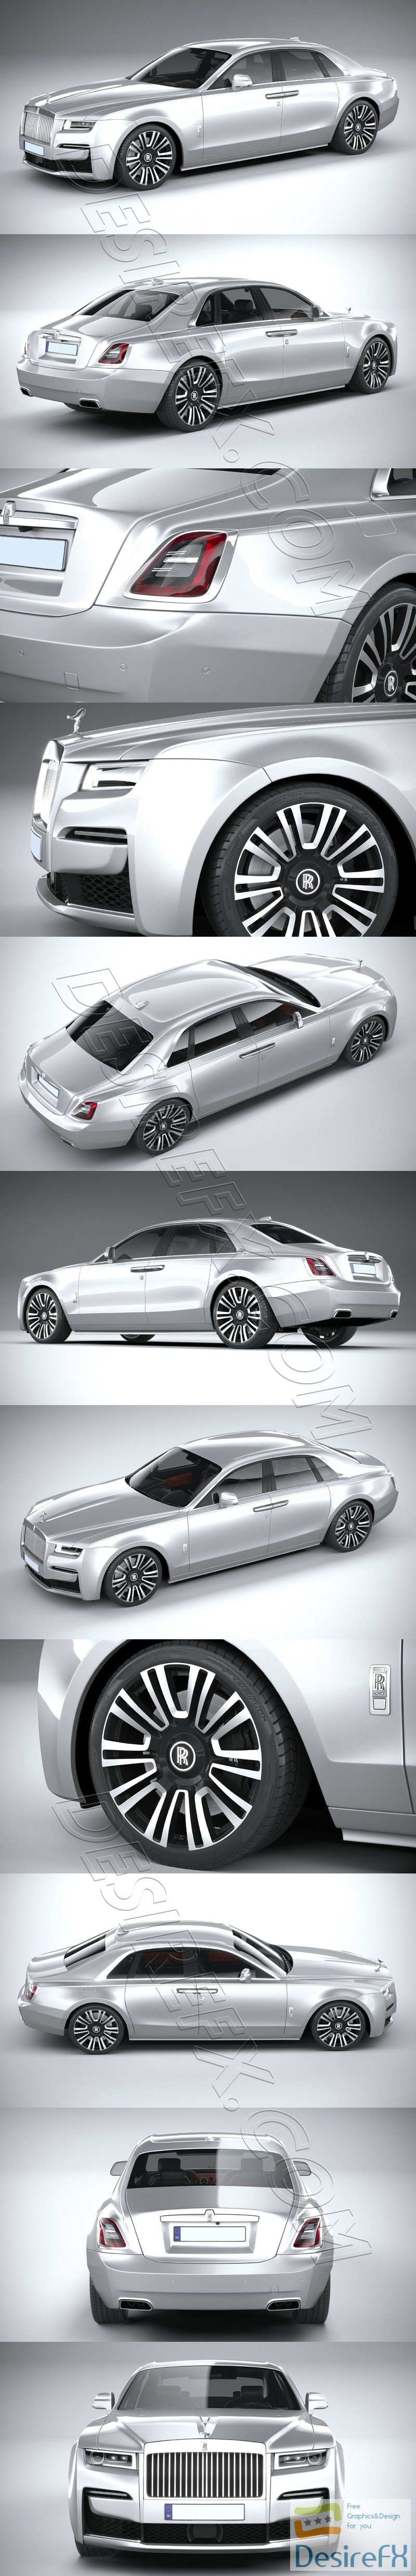 Rolls-Royce Ghost 2021 3D Model